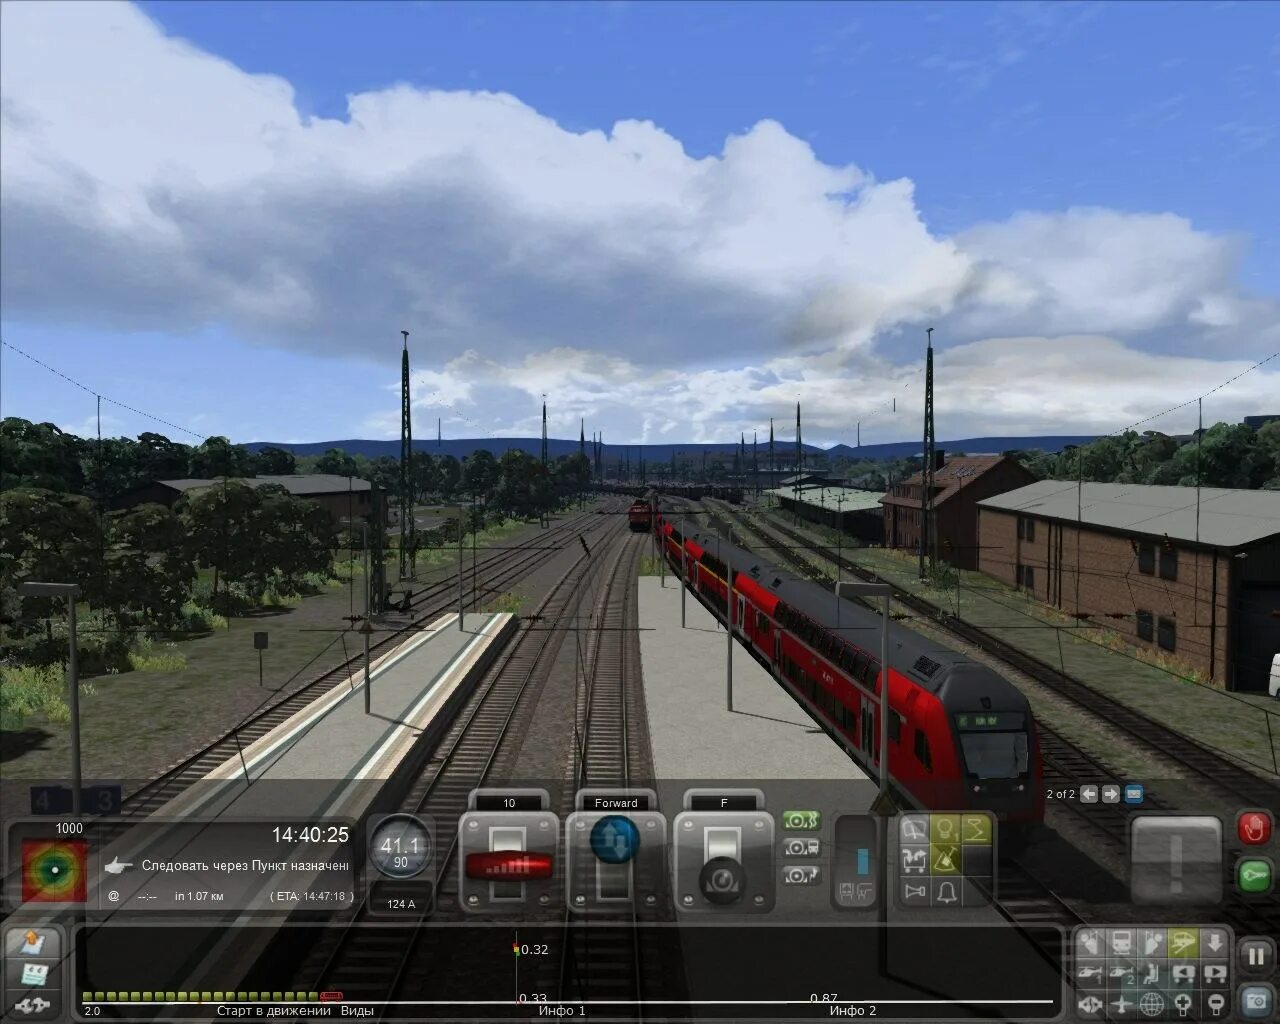 Бесплатные игры поезда симуляторы. Симулятор поезда Train Simulator. Симулятор поезда РЖД 2. Траин симулятор 2016. Train Simulator 2016: Steam Edition.